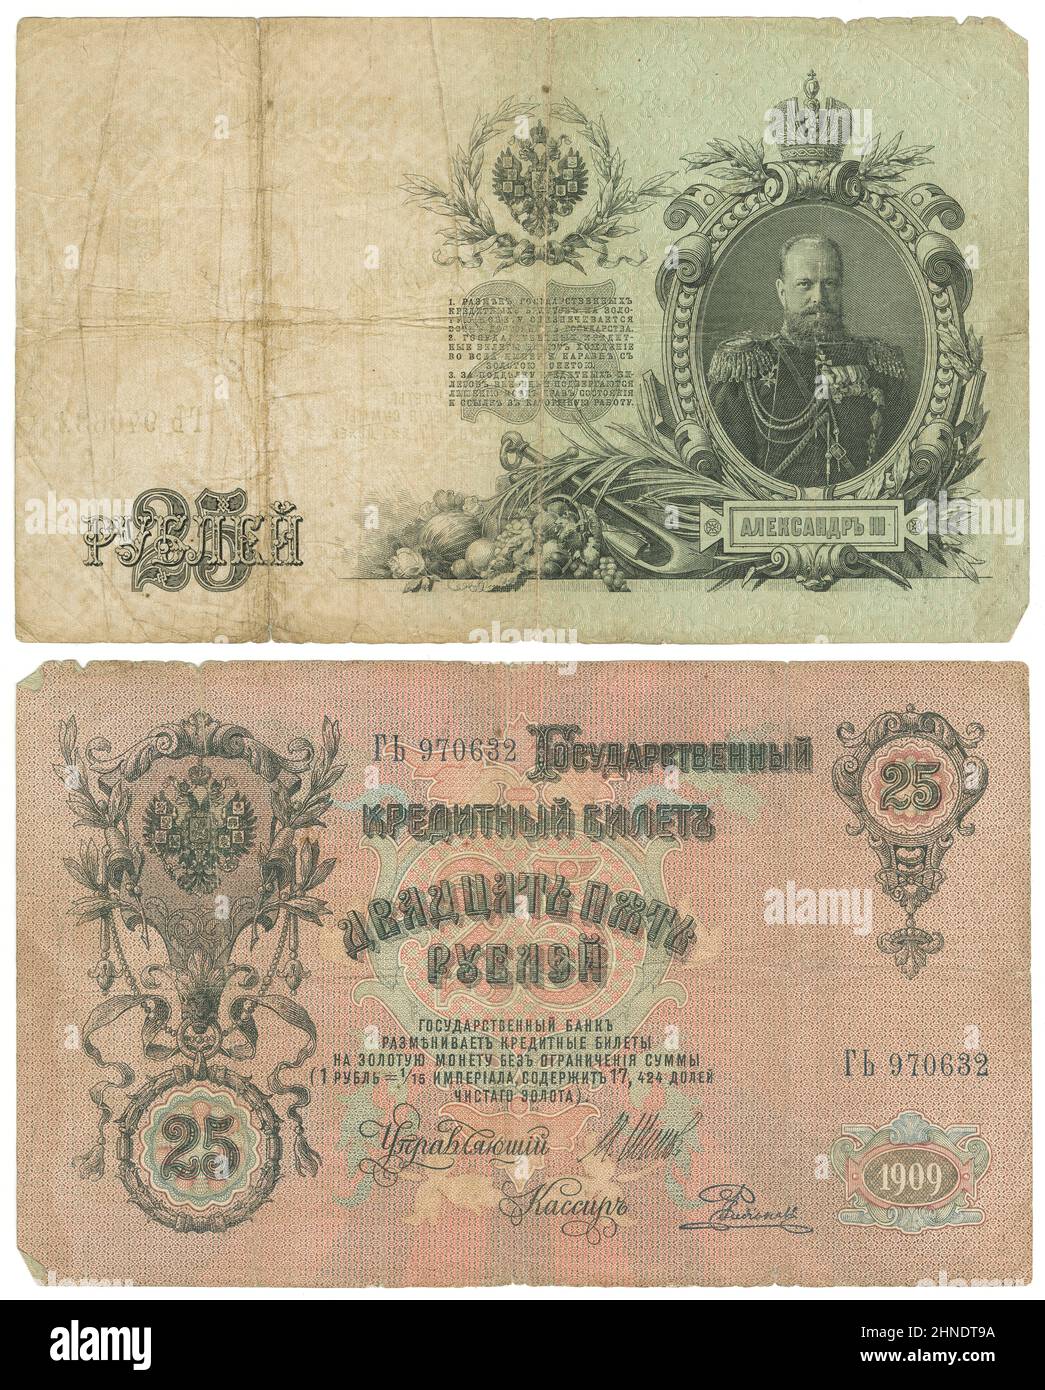 1909, venticinque rubli nota, la Russia, obverse e reverse. Dimensioni effettive: 176mm x 108mm. Foto Stock